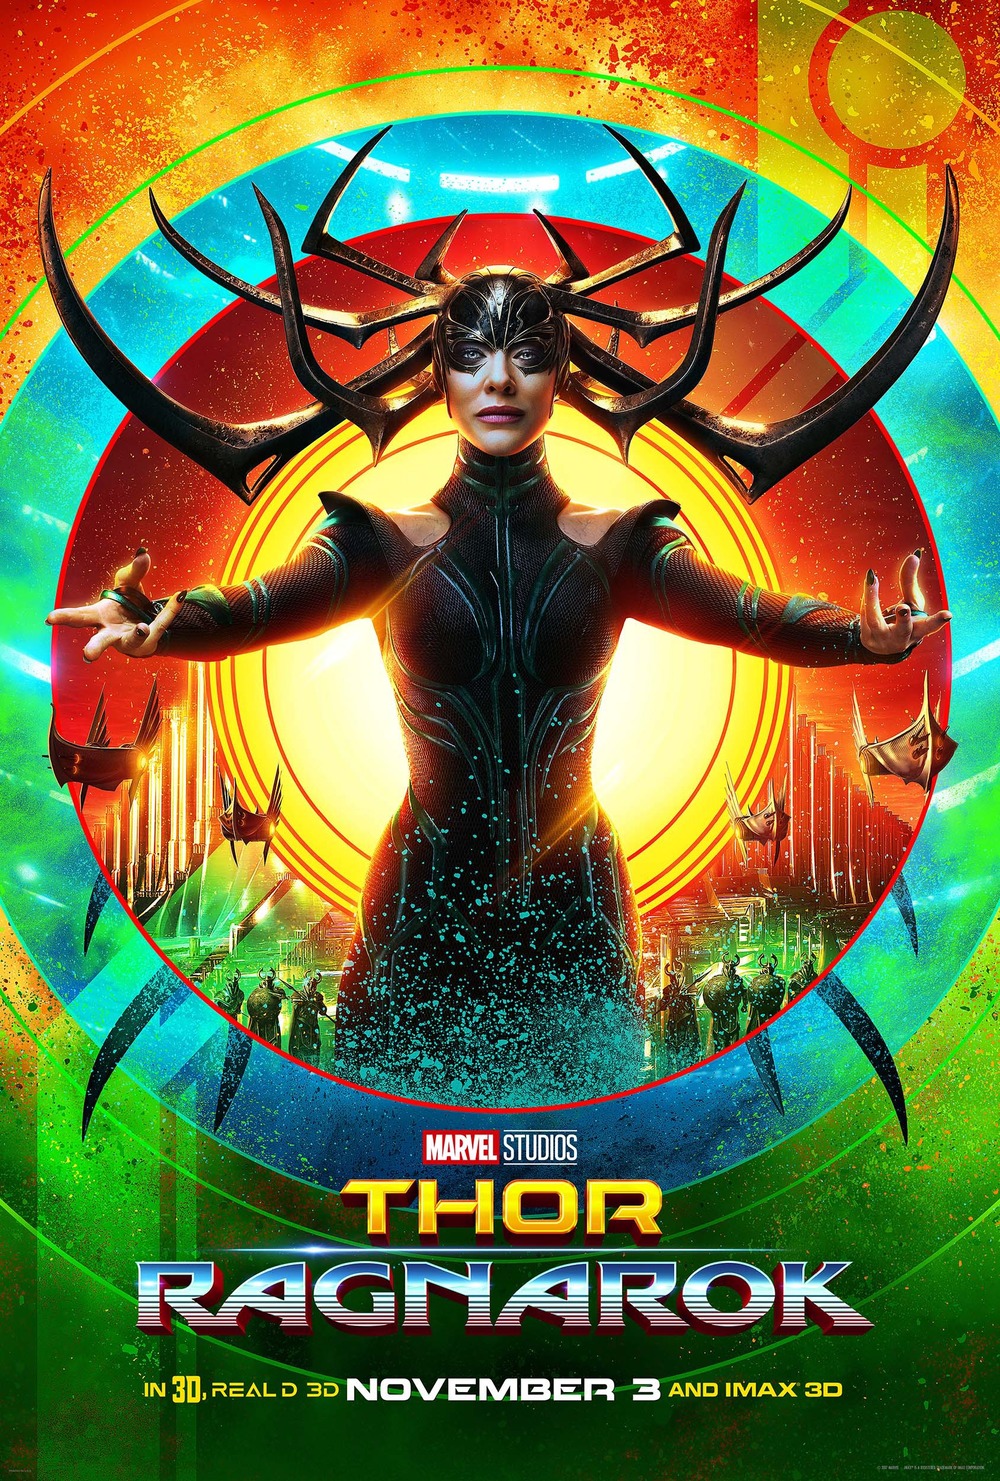 Thor: Ragnarok DVD Release Date | Redbox, Netflix, iTunes, Amazon